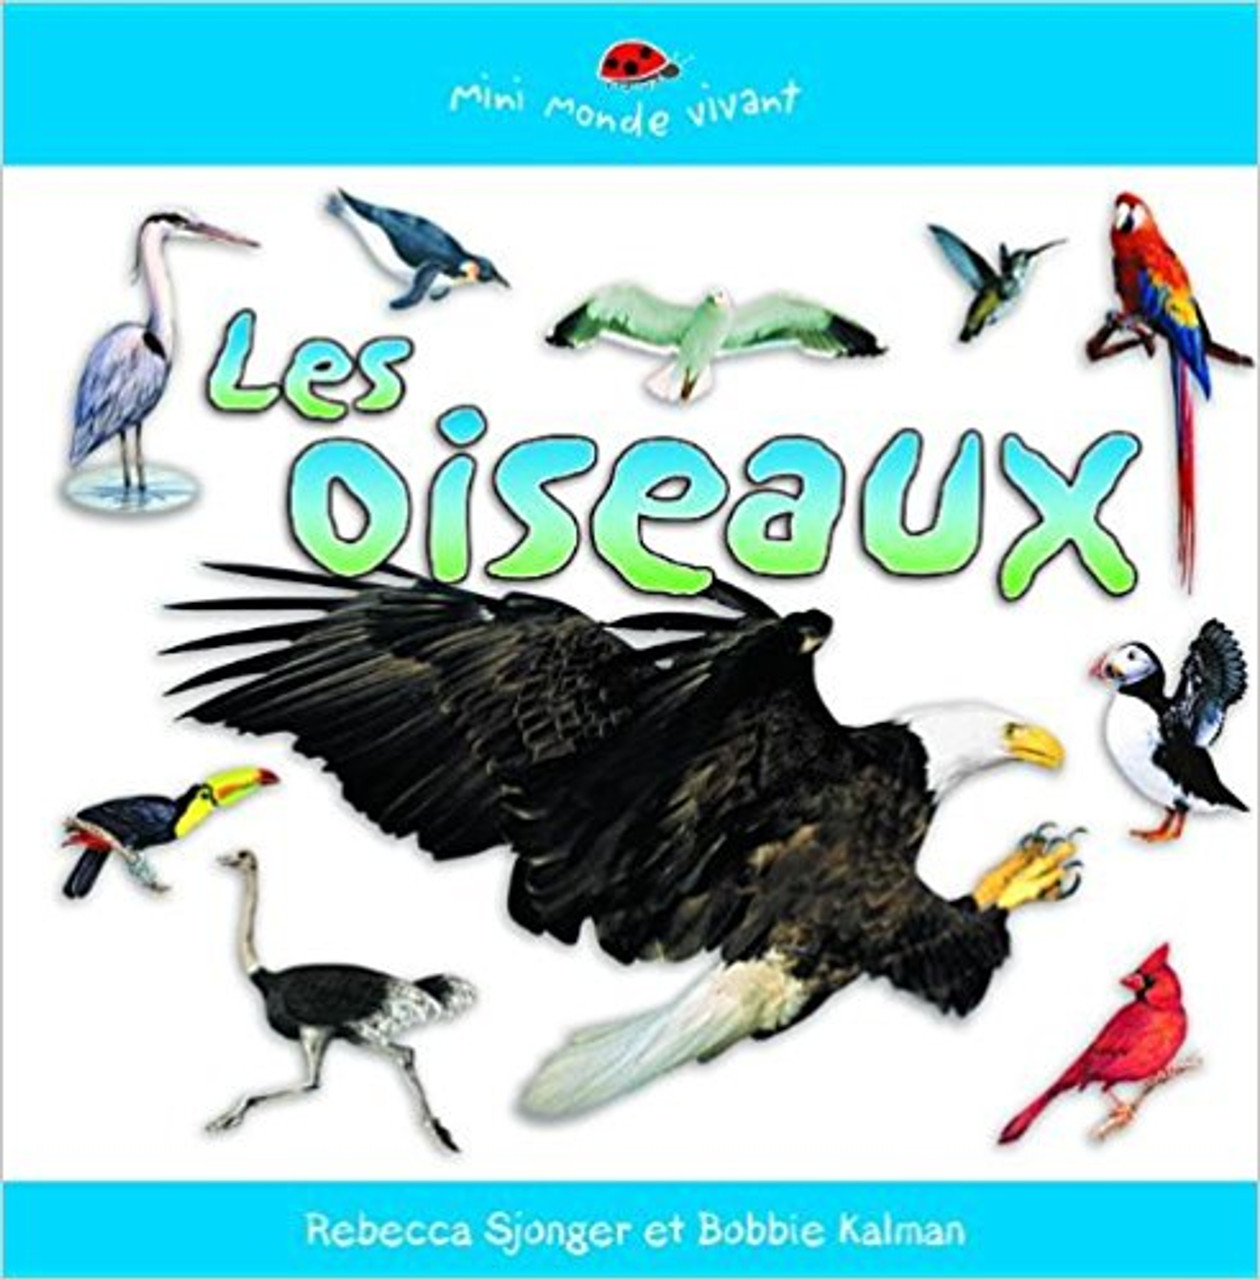 Les Oiseaux by Rebecca Sjonger